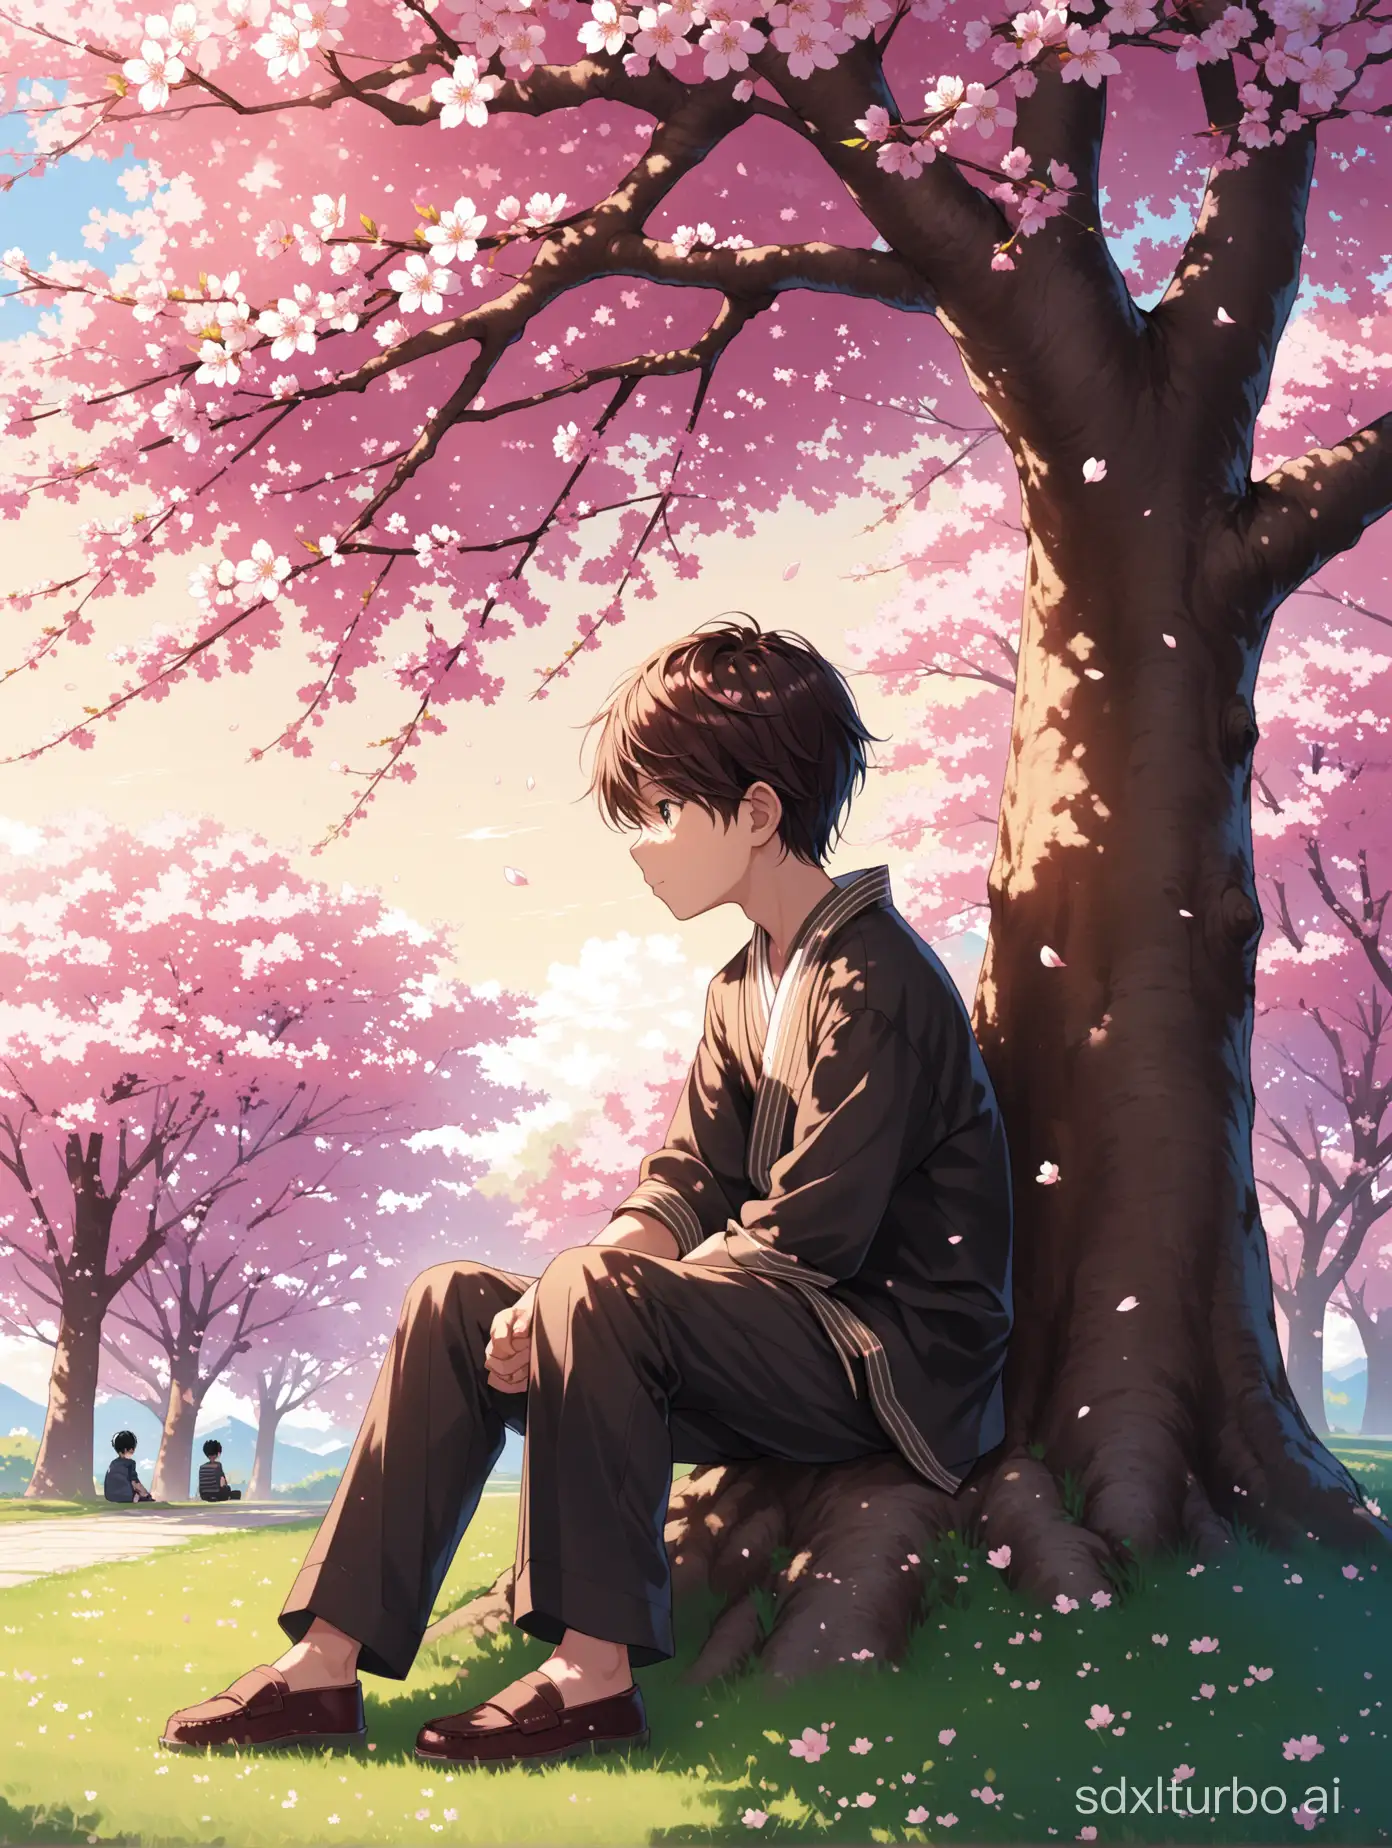 男孩坐在一棵櫻花樹下